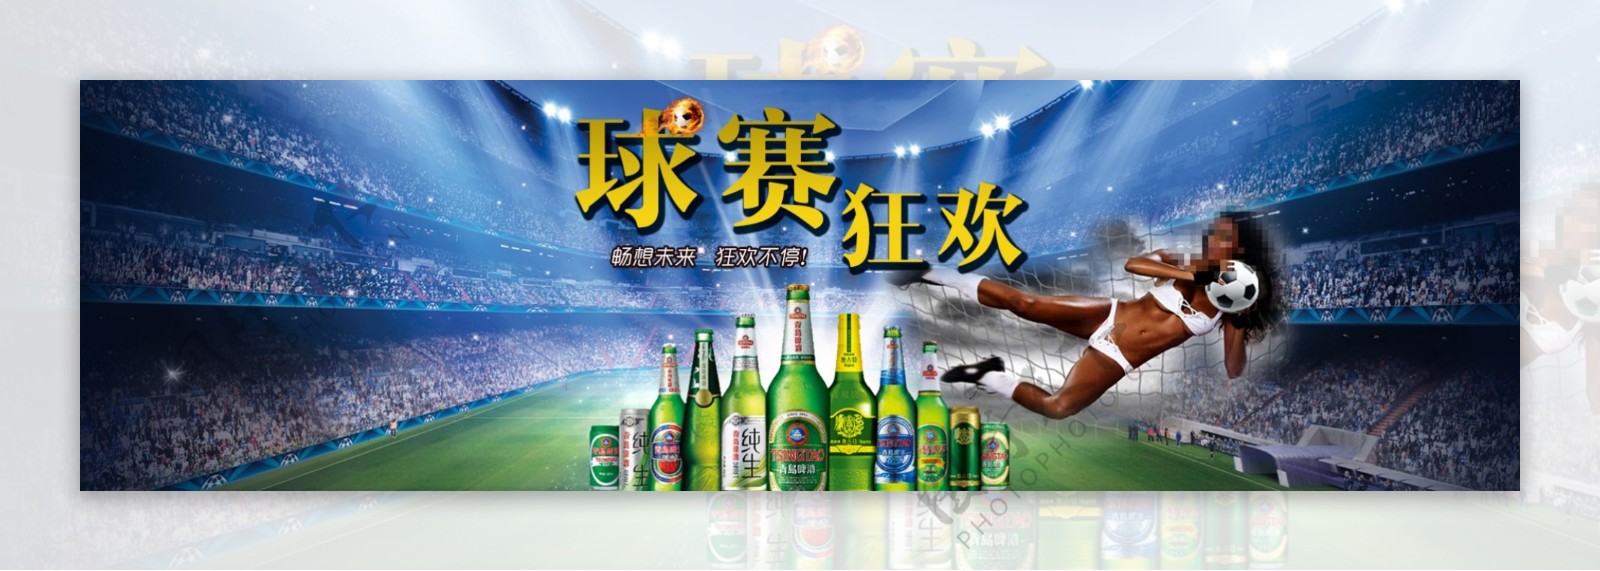 淘宝天猫促销海报球赛狂欢青岛啤酒